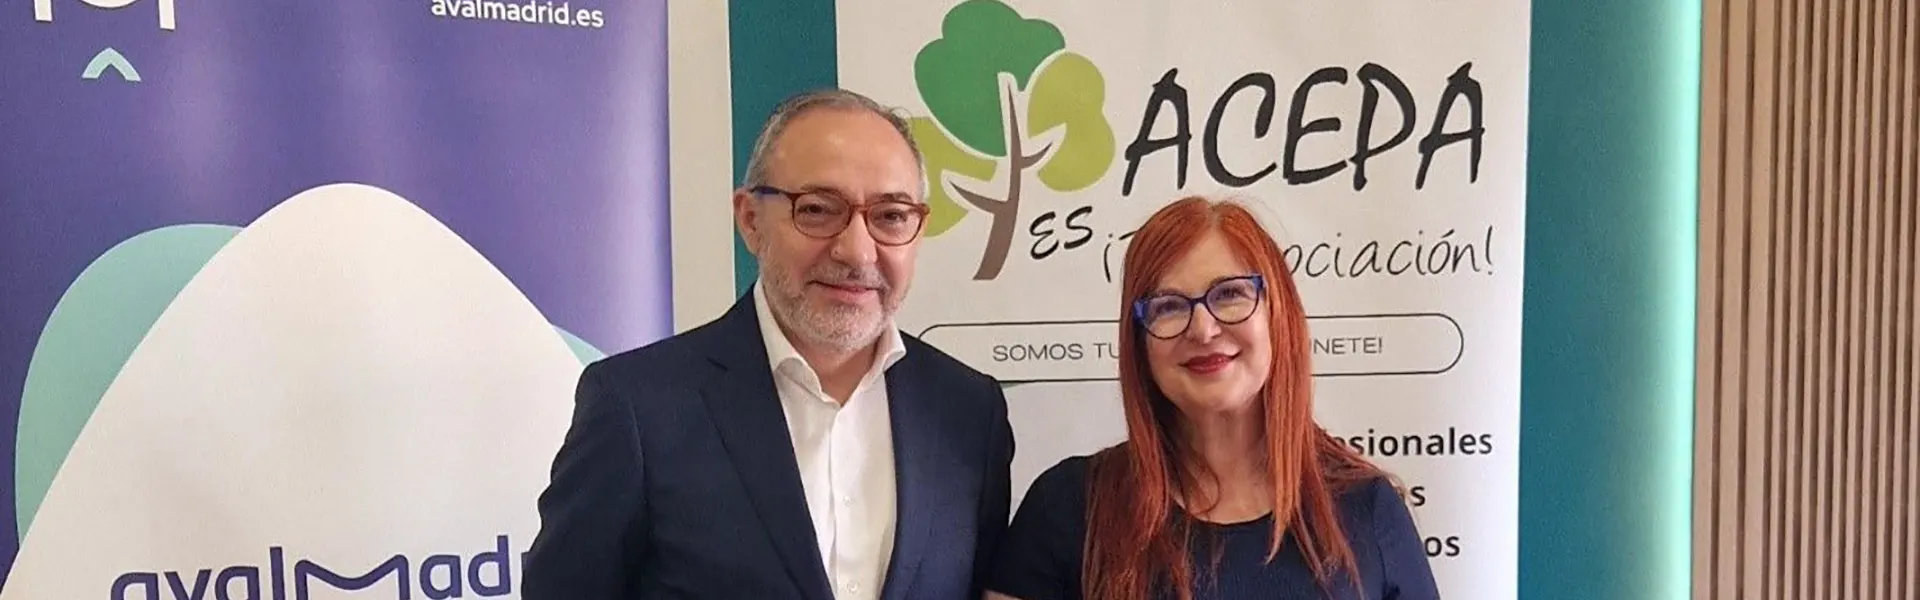 Avalmadrid firma un acuerdo de colaboración con ACEPA Madrid para impulsar nuevos proyectos de negocio entre sus asociados ultimas noticias cesgar